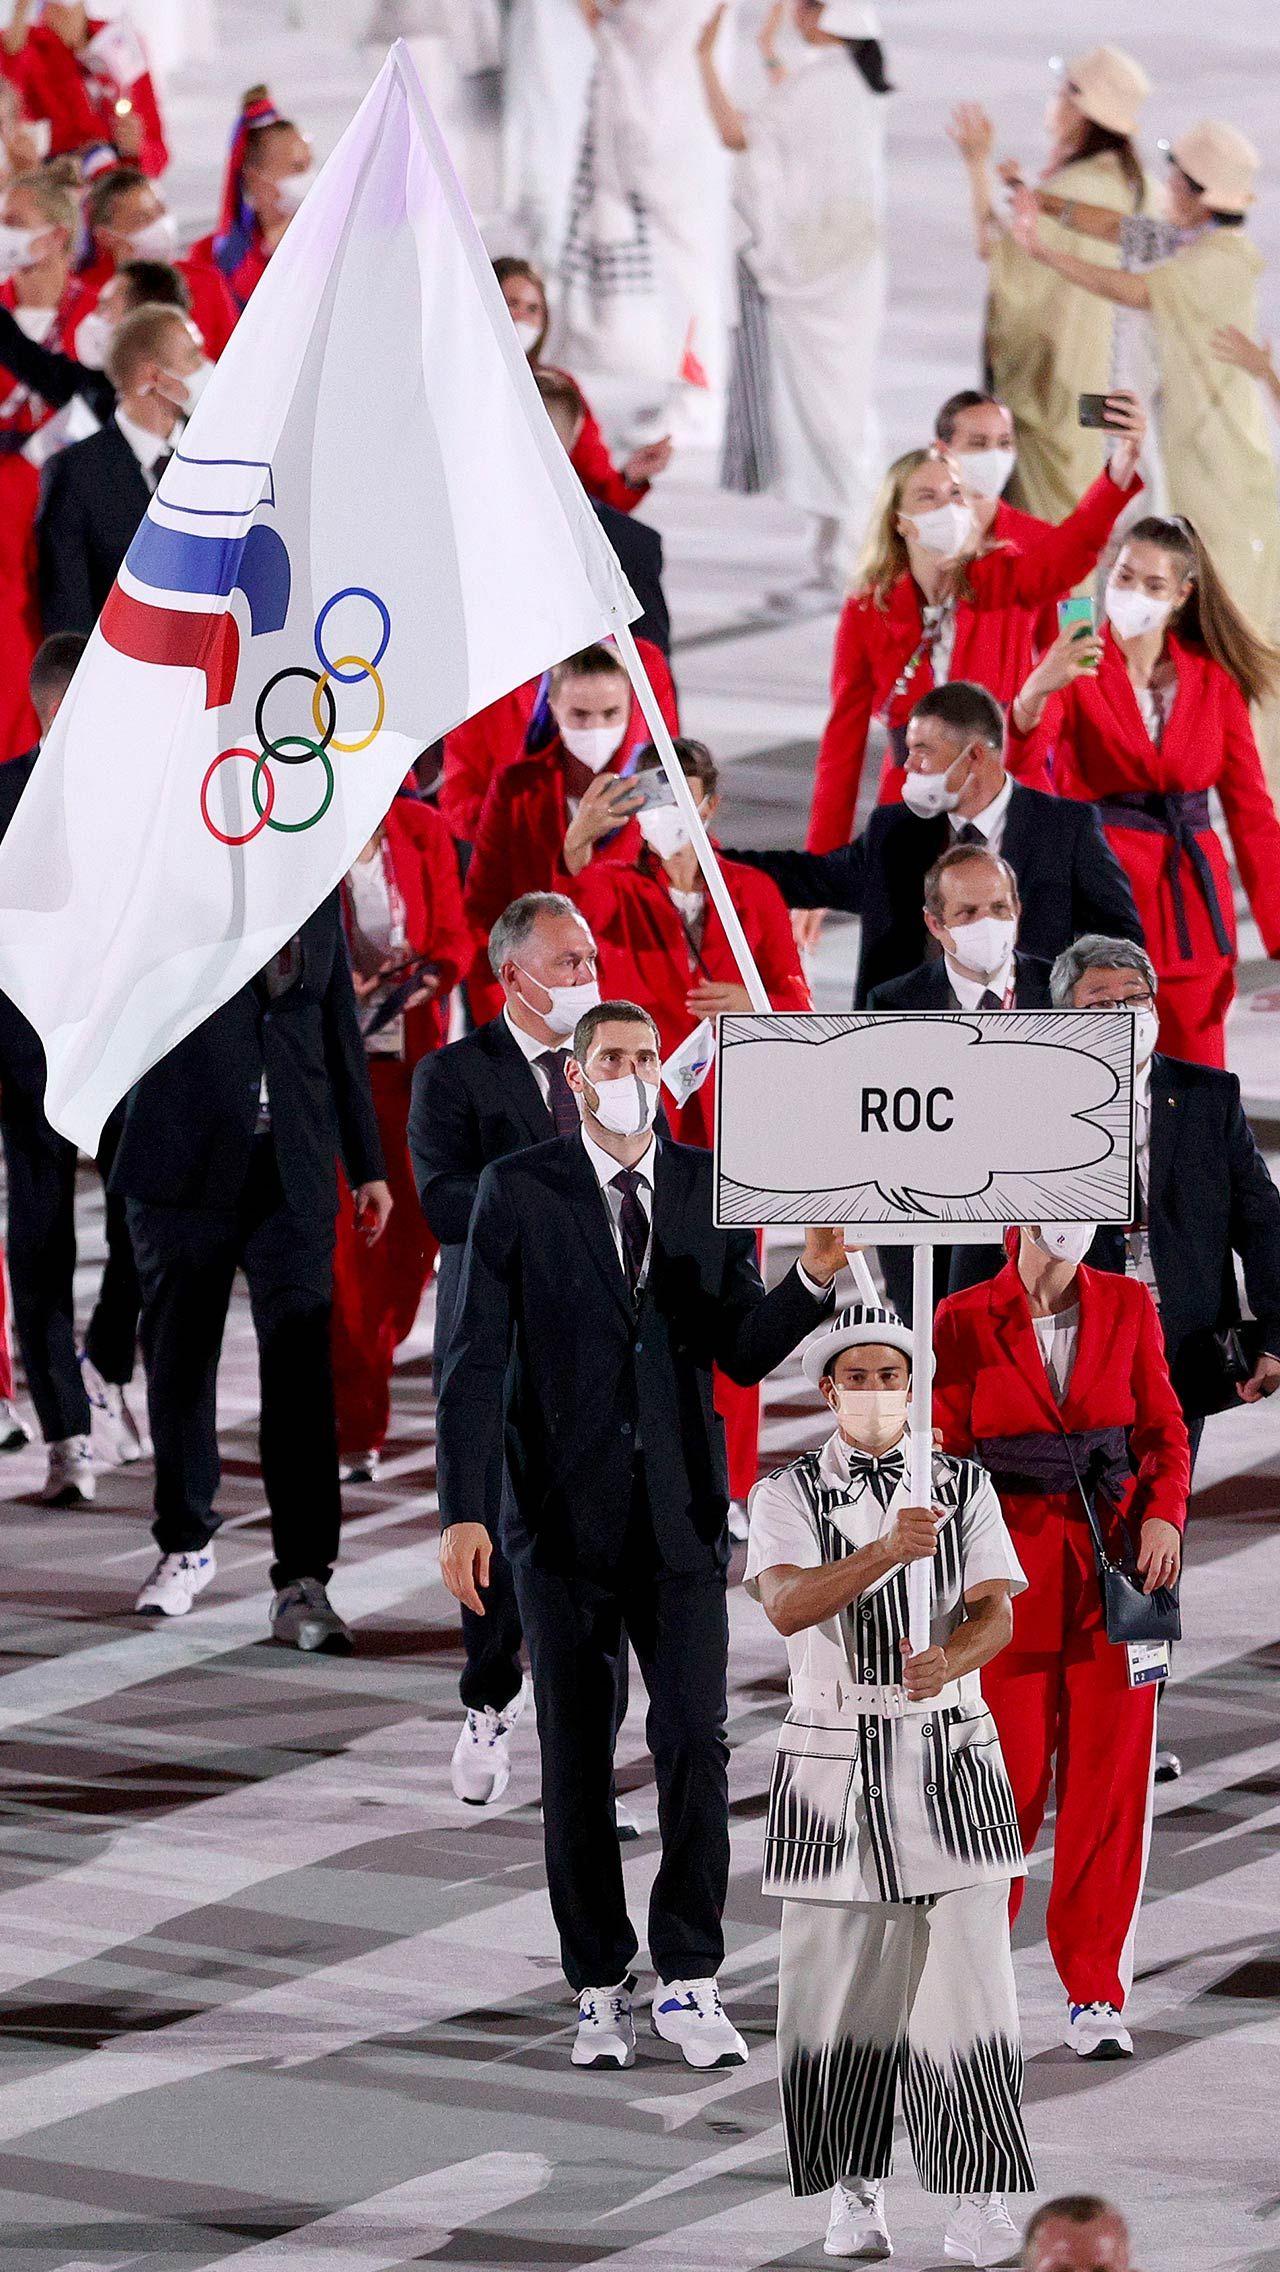 Стоит отметить, что дисквалификация CAS, согласно которой россияне не могли использовать флаг и гимн на чемпионатах мира и Олимпиадах, завершится 16 декабря 2022 года.